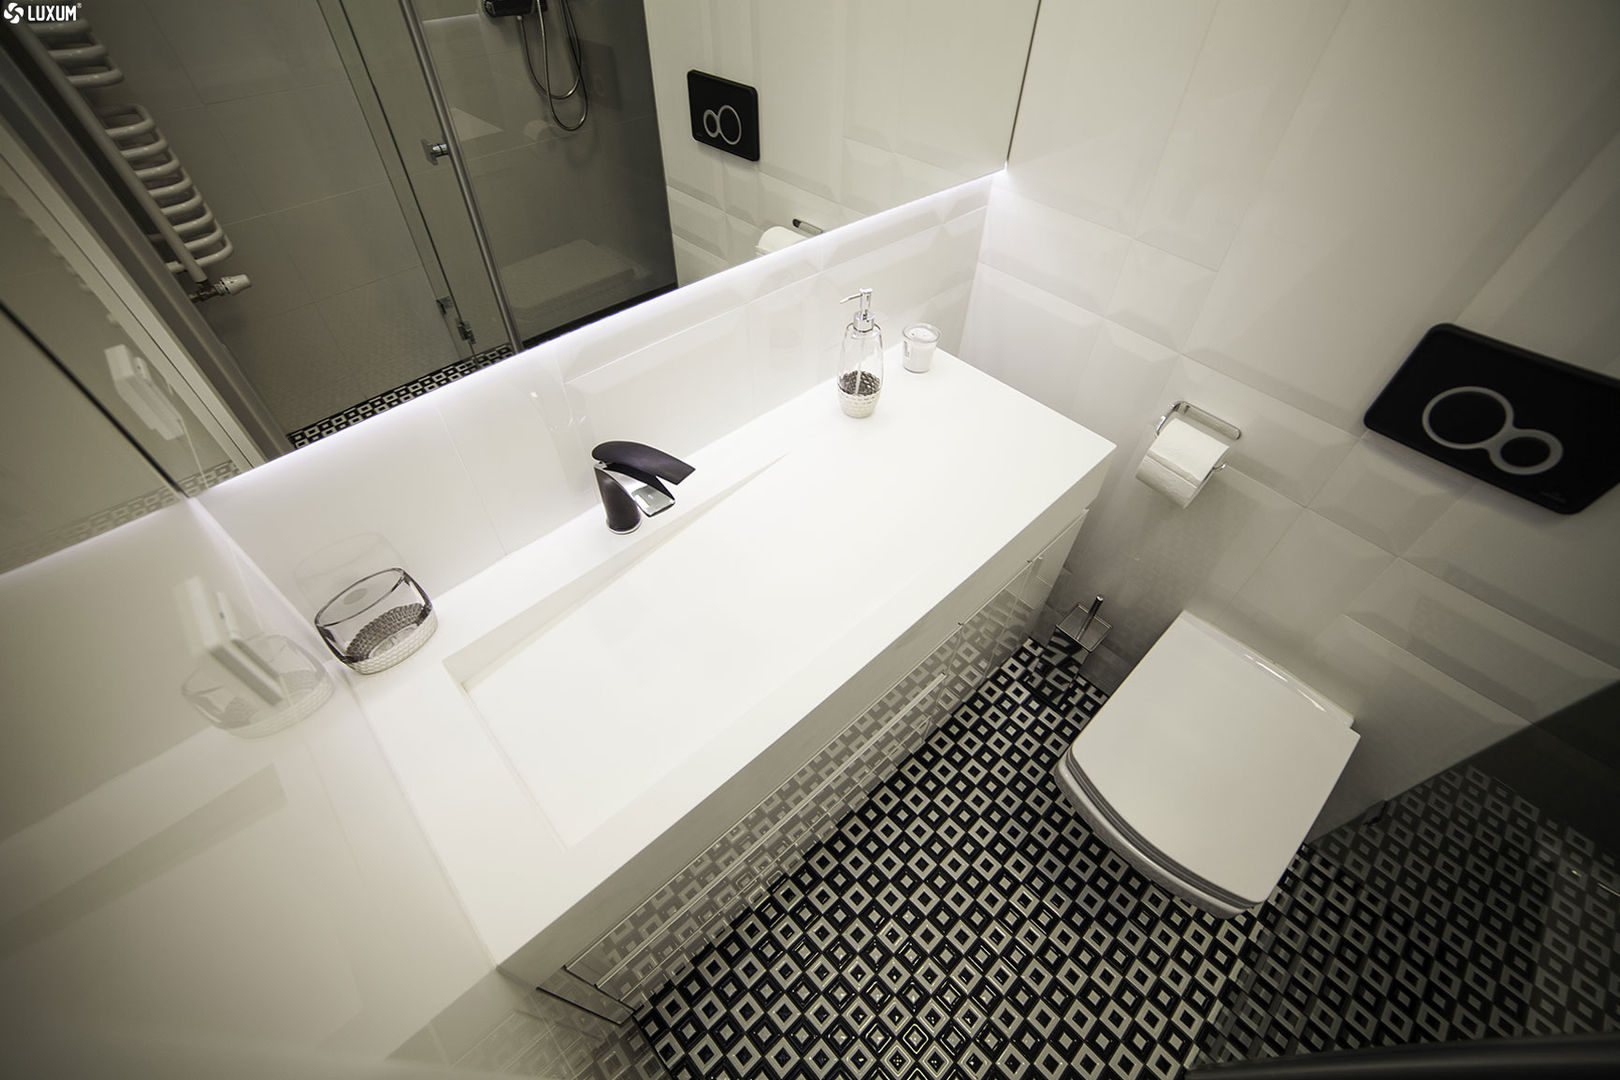 Prostokątna umywalka z odpływem liniowym od Luxum. , Luxum Luxum حمام